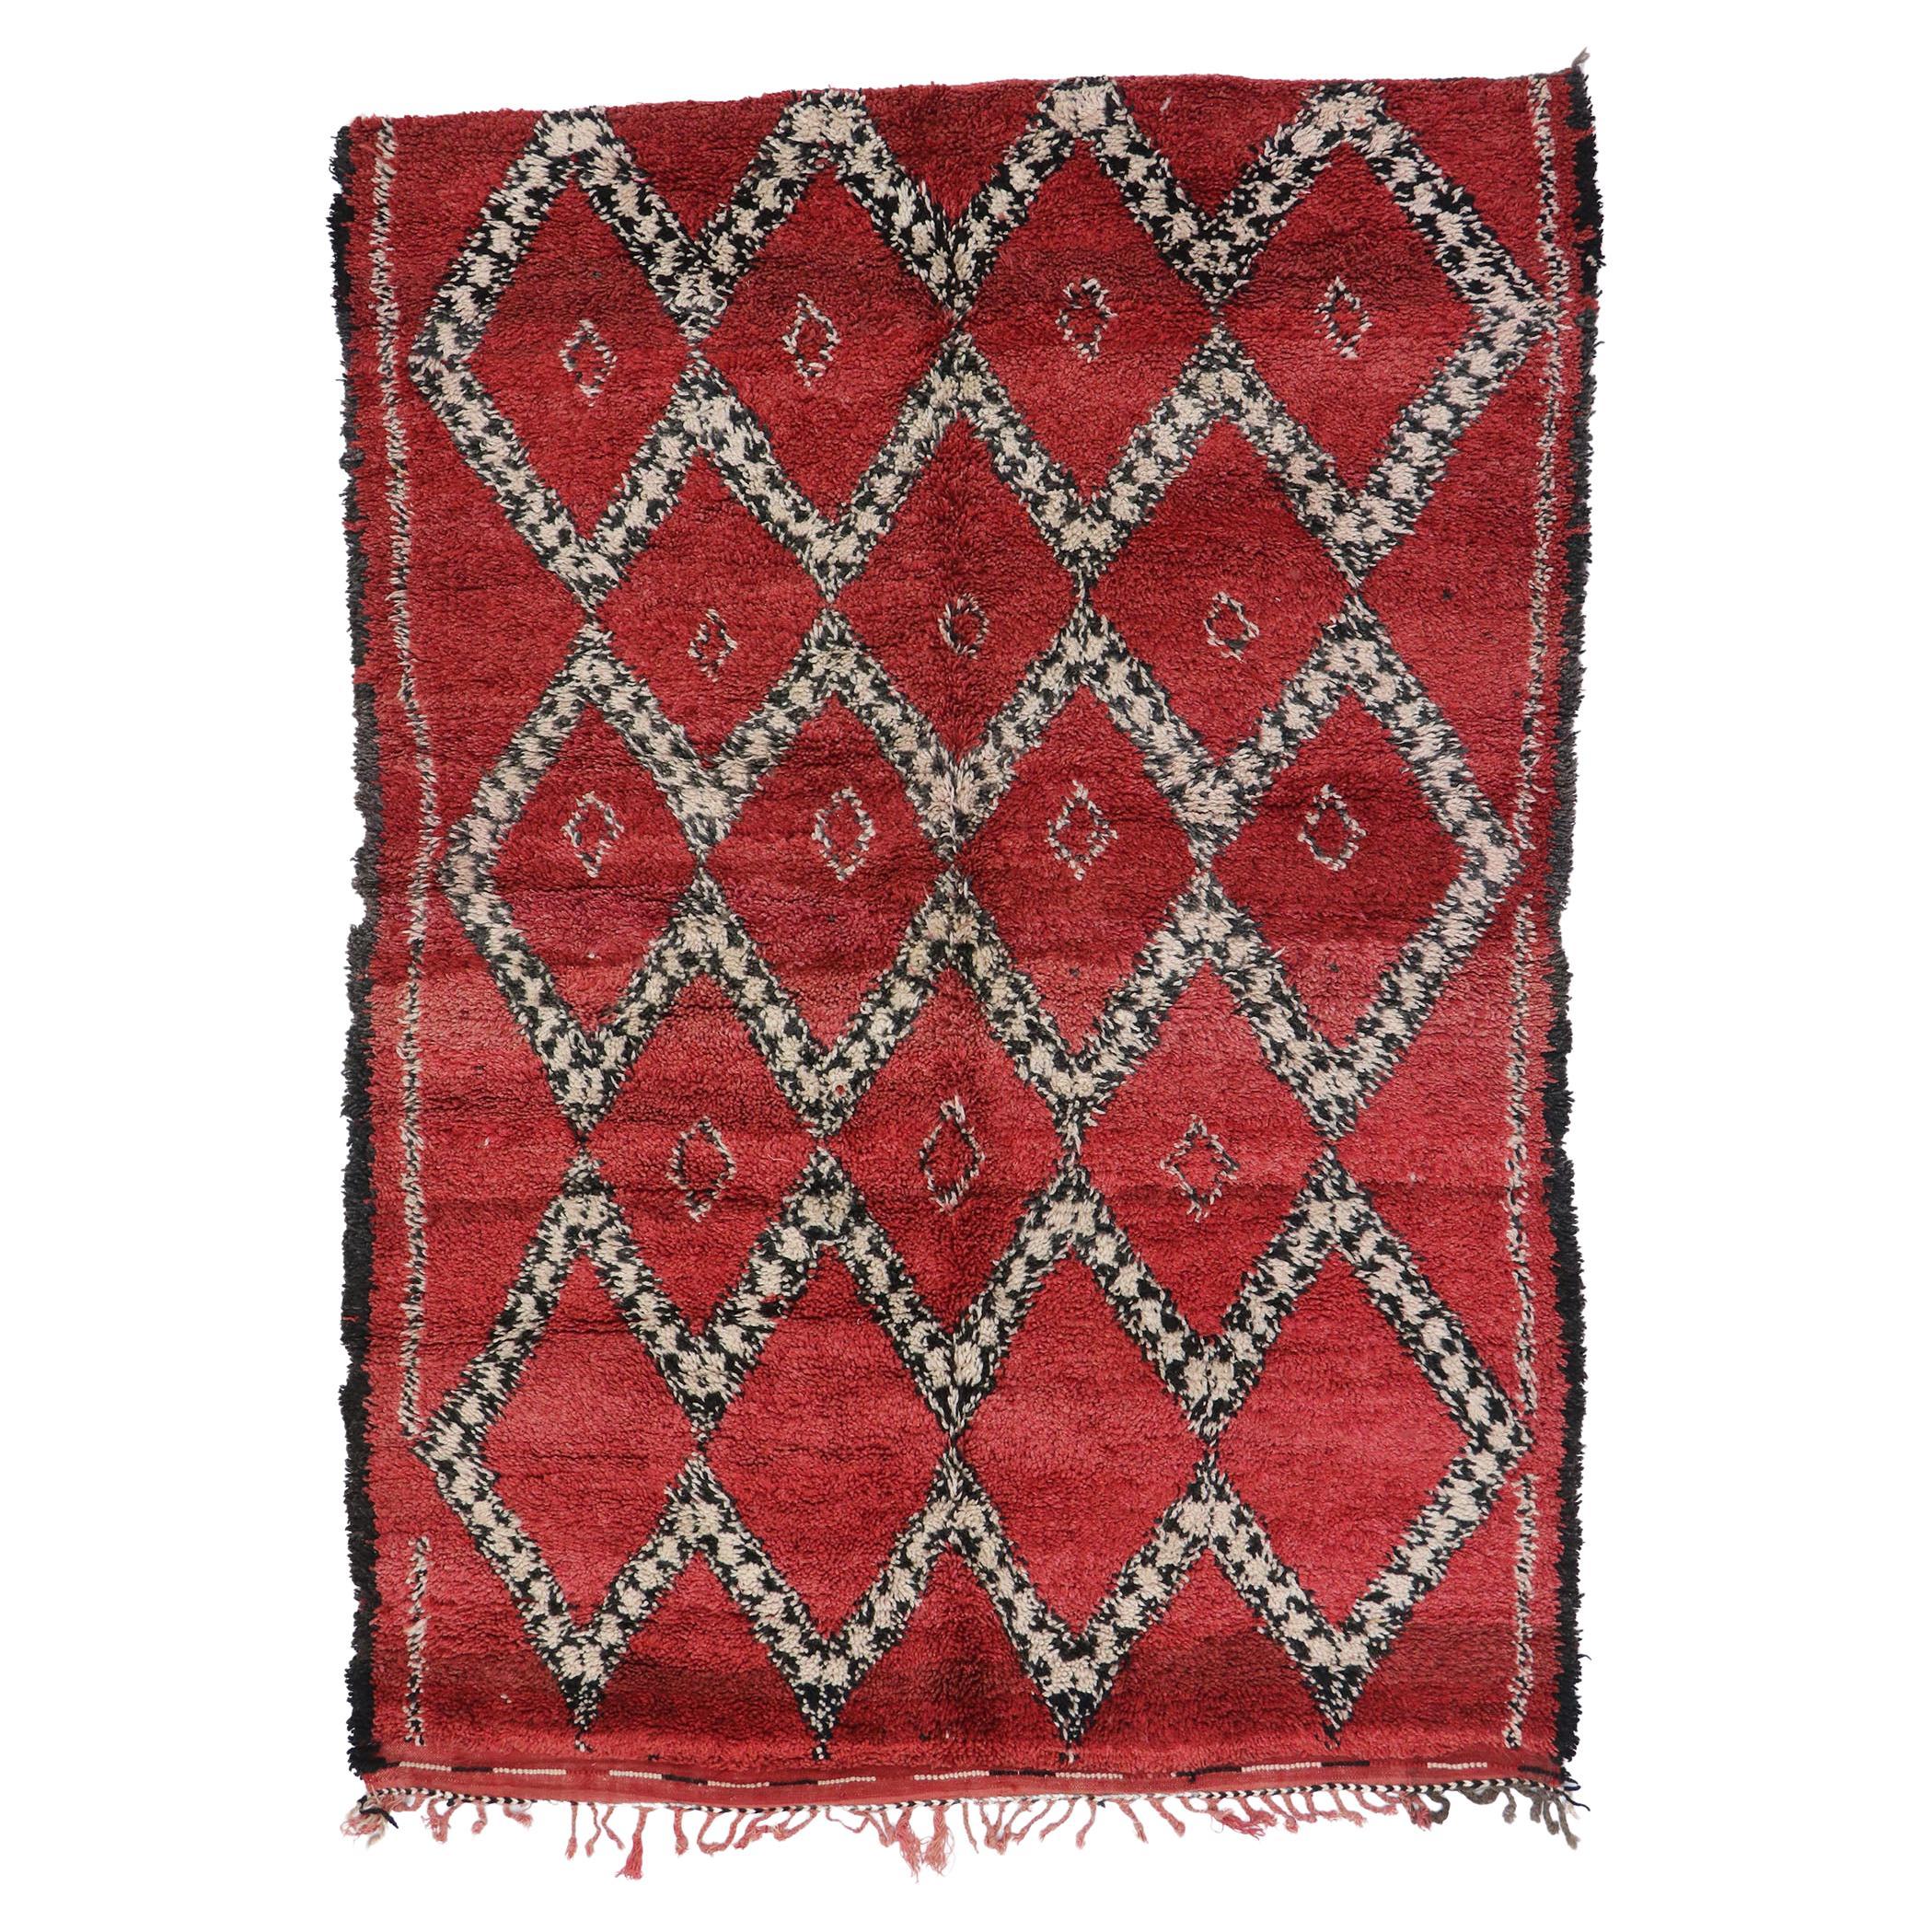 Marokkanischer Beni Ourain-Teppich im Vintage-Stil, Midcentury Meets Boho Chic